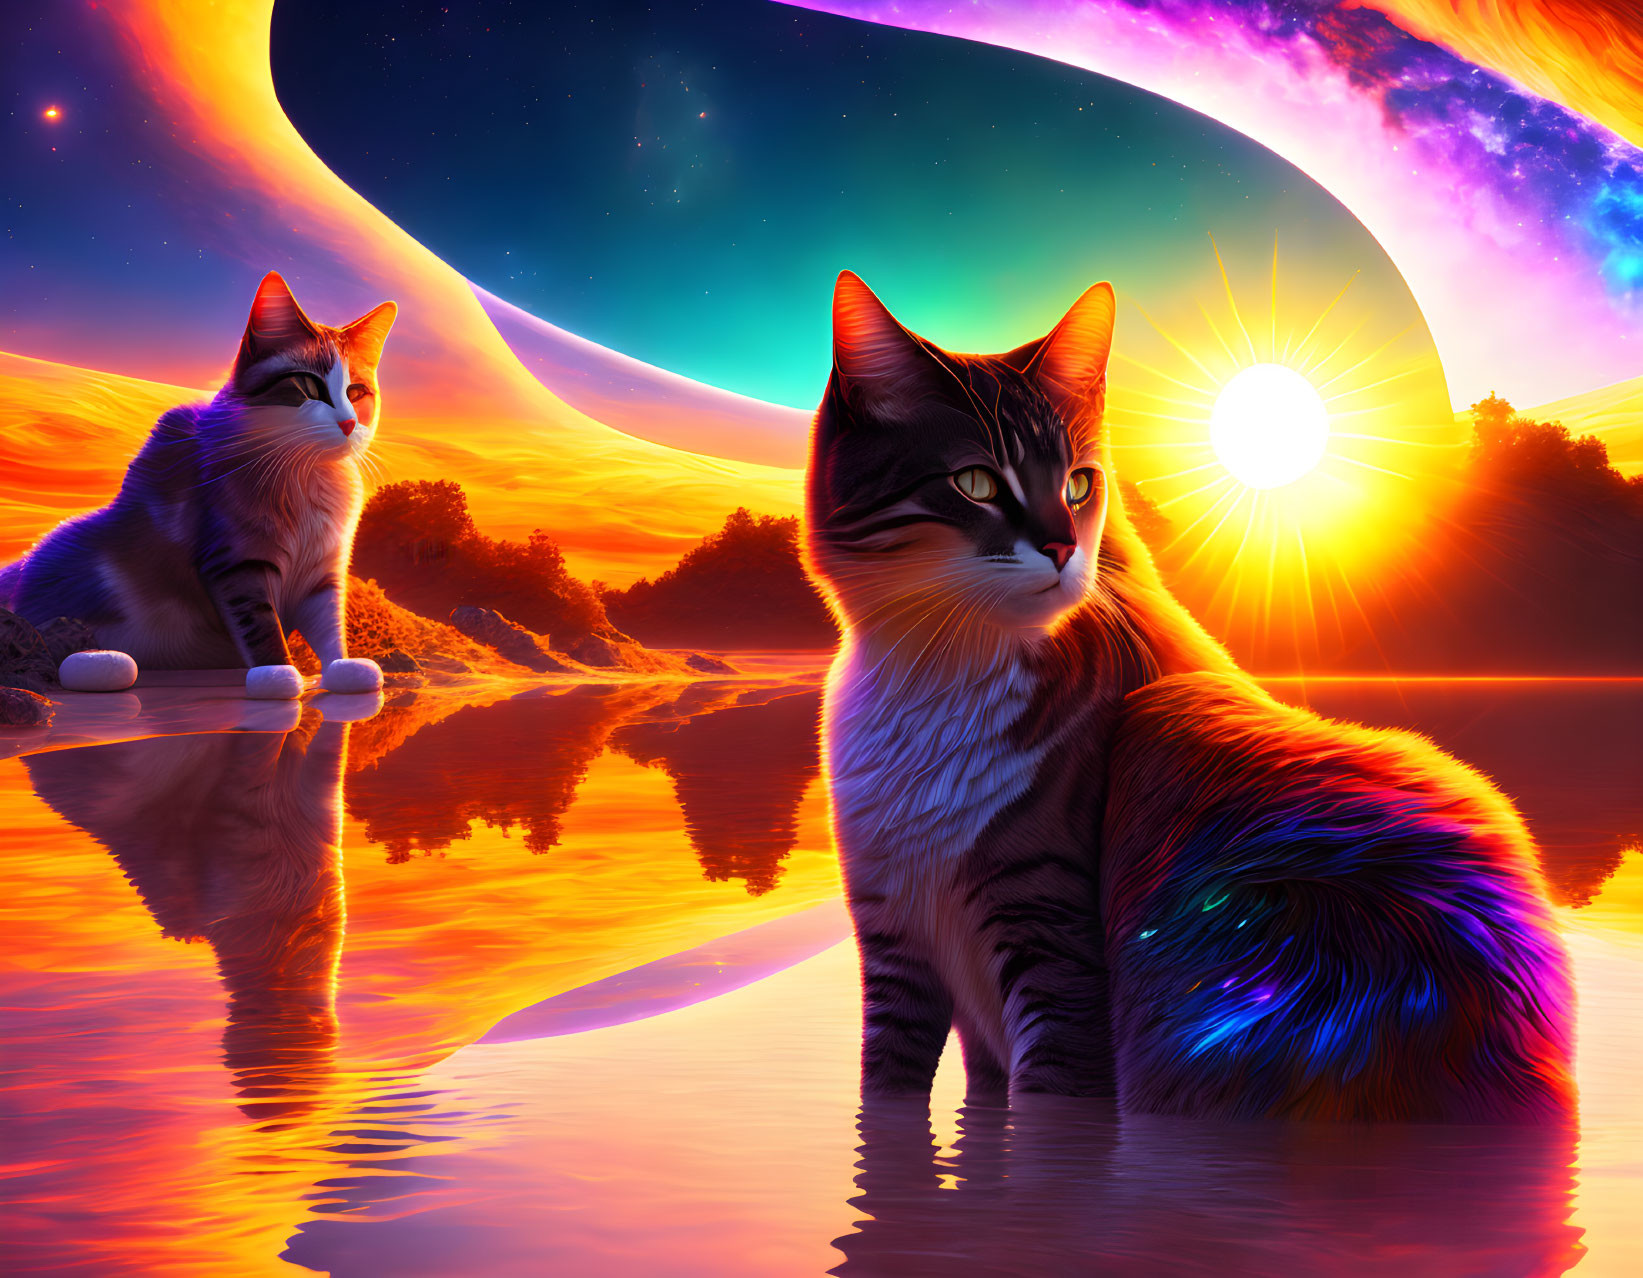  universe cats 